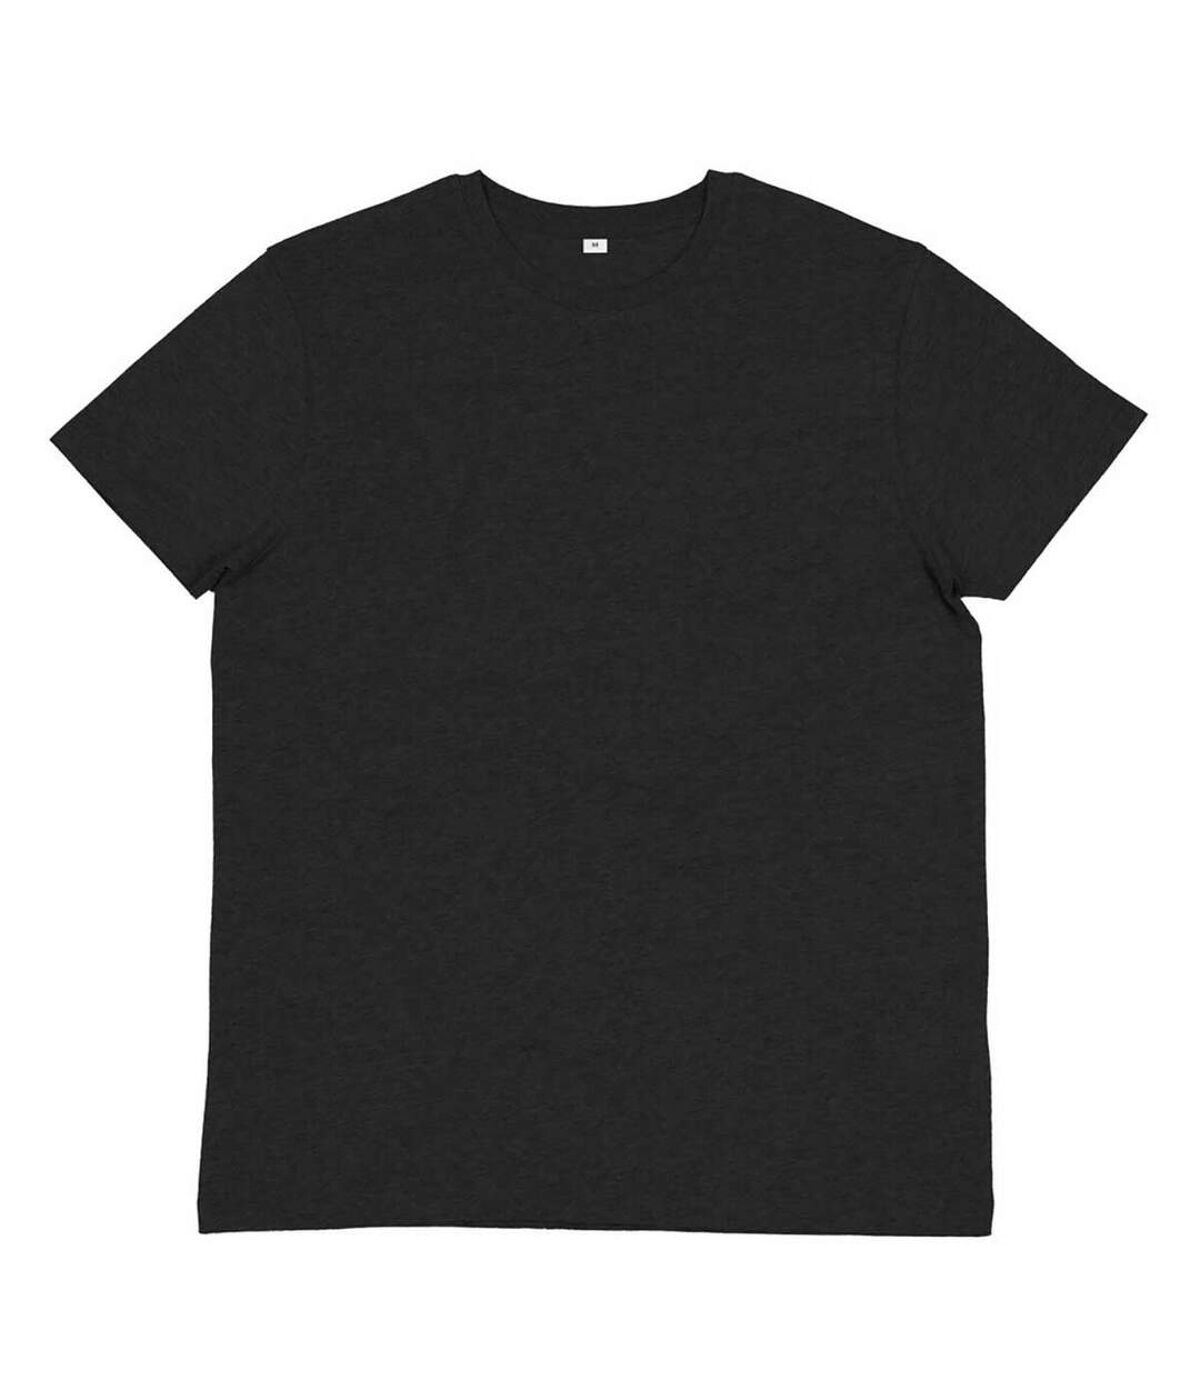 Mantis - T-shirt - Homme (Gris foncé) - UTBC4764